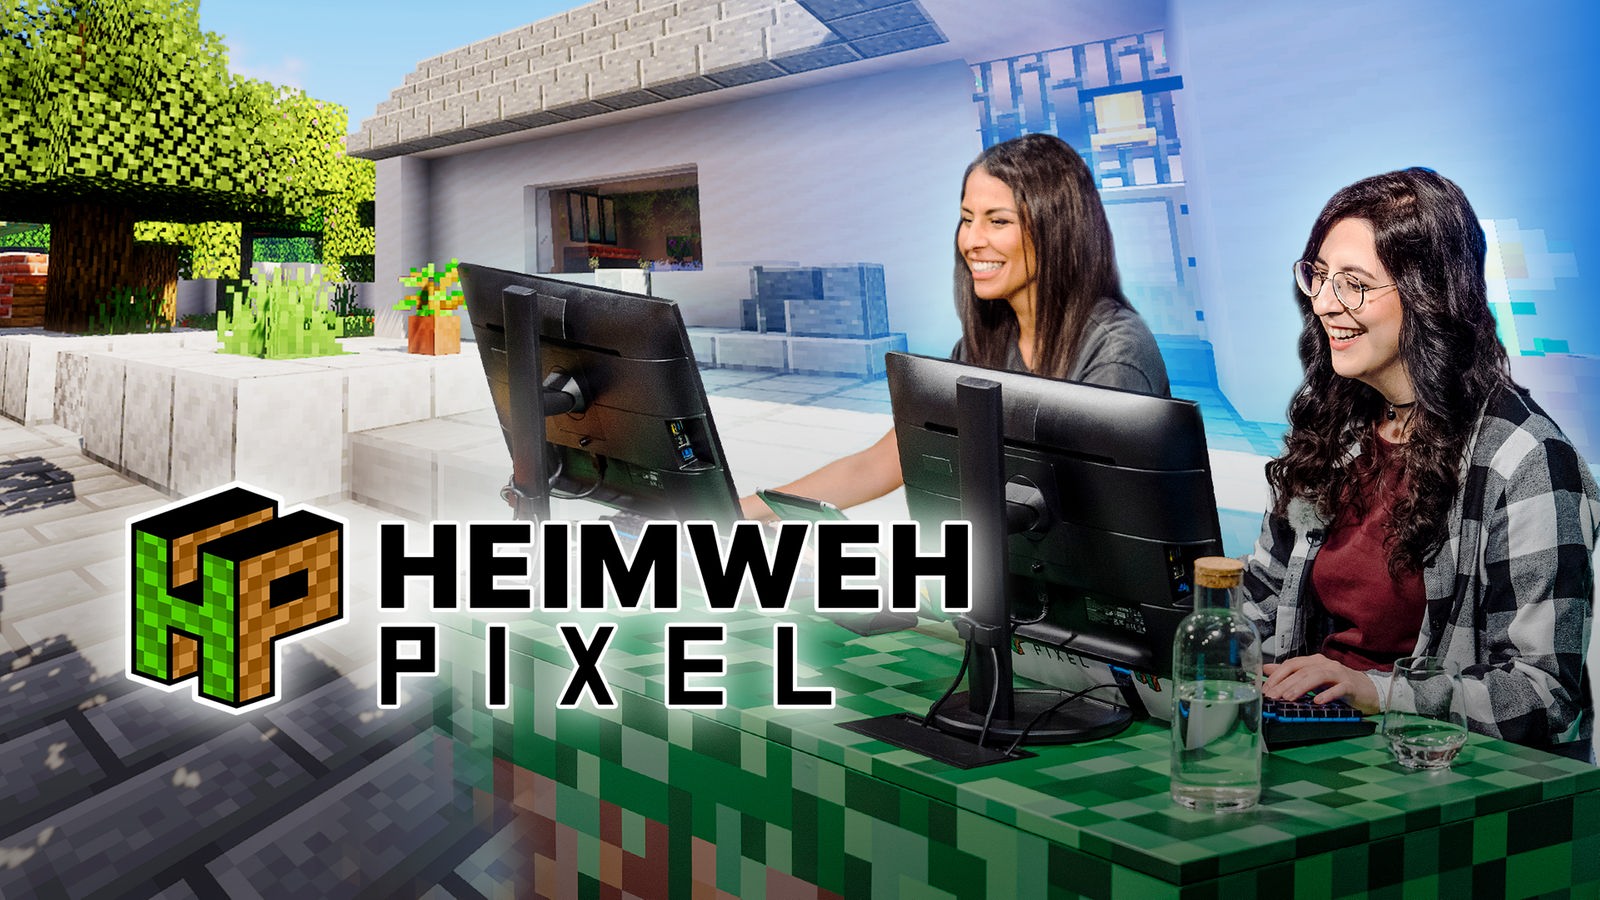 Bildmontage, die im Hintergrund ein im Videospiel Minecraft gebautes Haus zeigt. Im Vordergrund sitzen zwei Frauen vor Computer-Monitoren. Auf dem Bild steht der Schriftzug "Heimwehpixel".